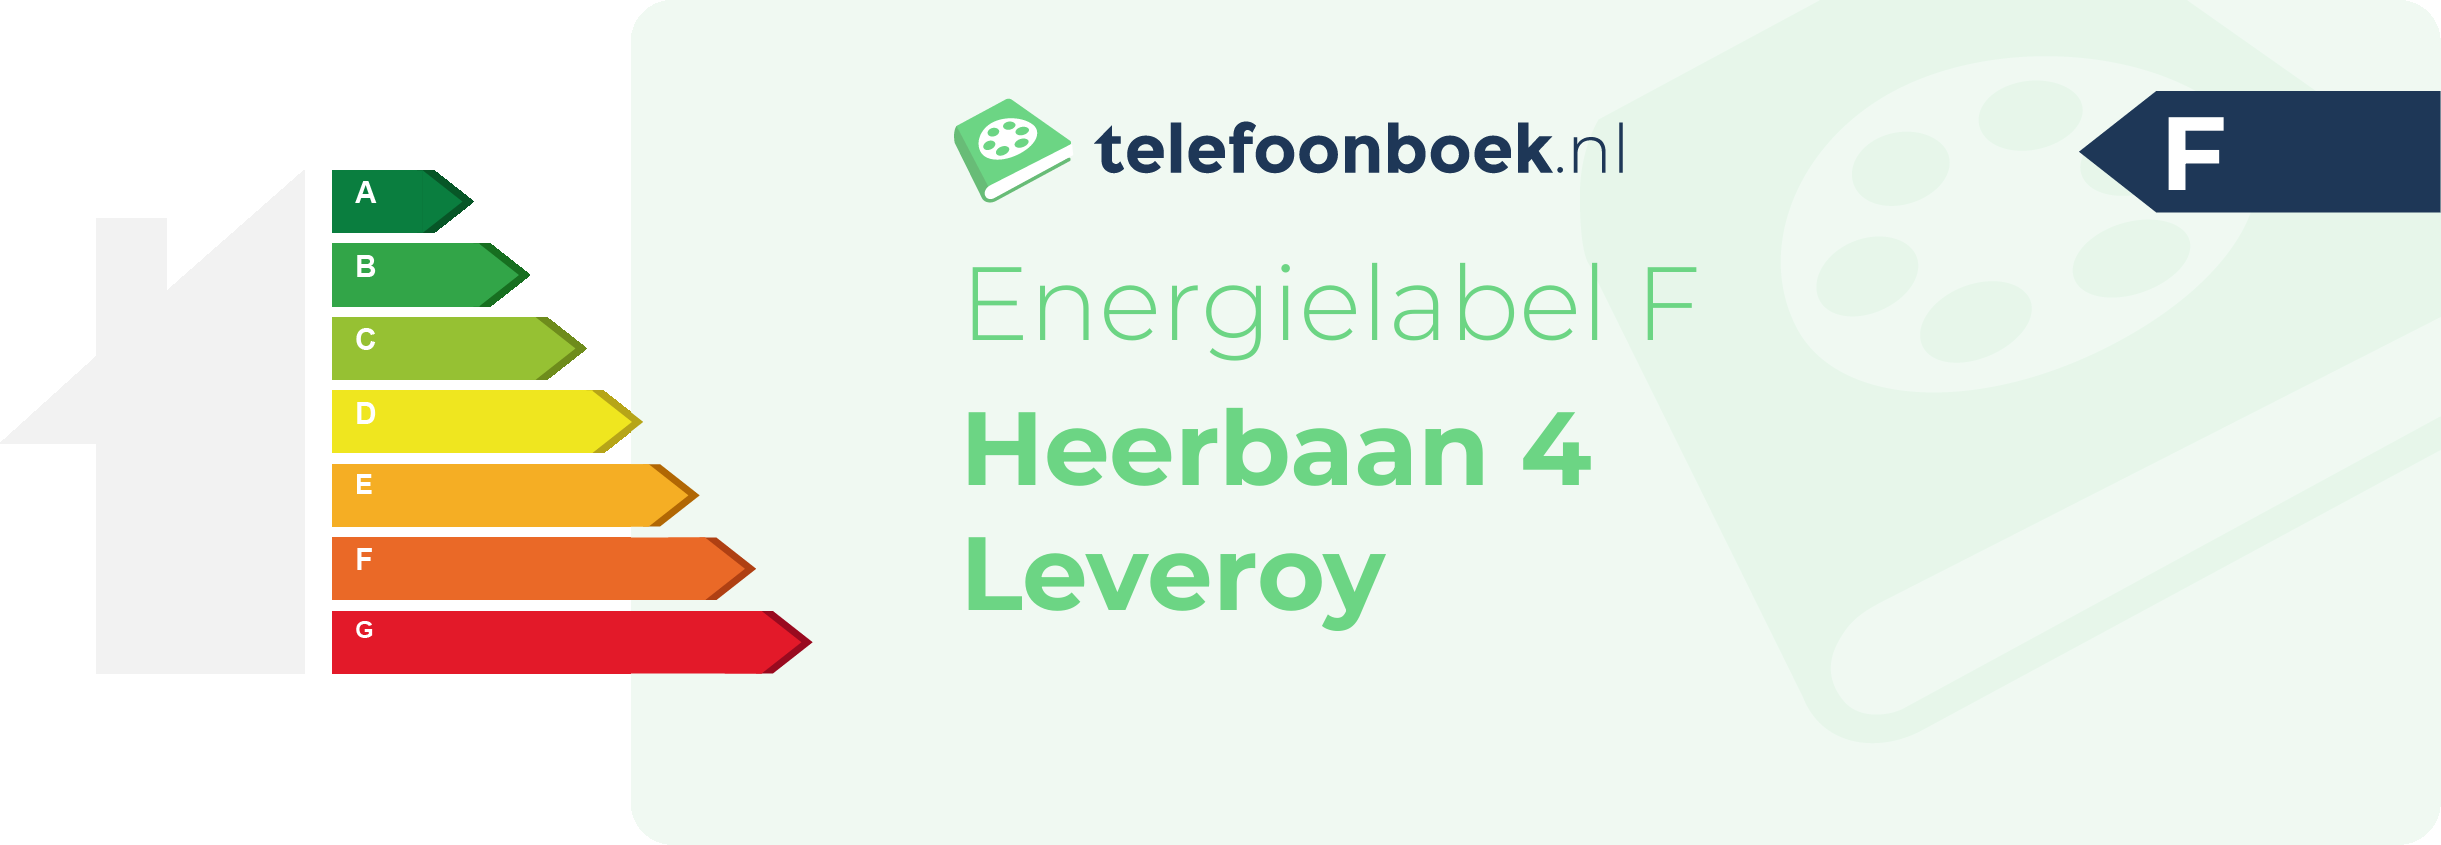 Energielabel Heerbaan 4 Leveroy